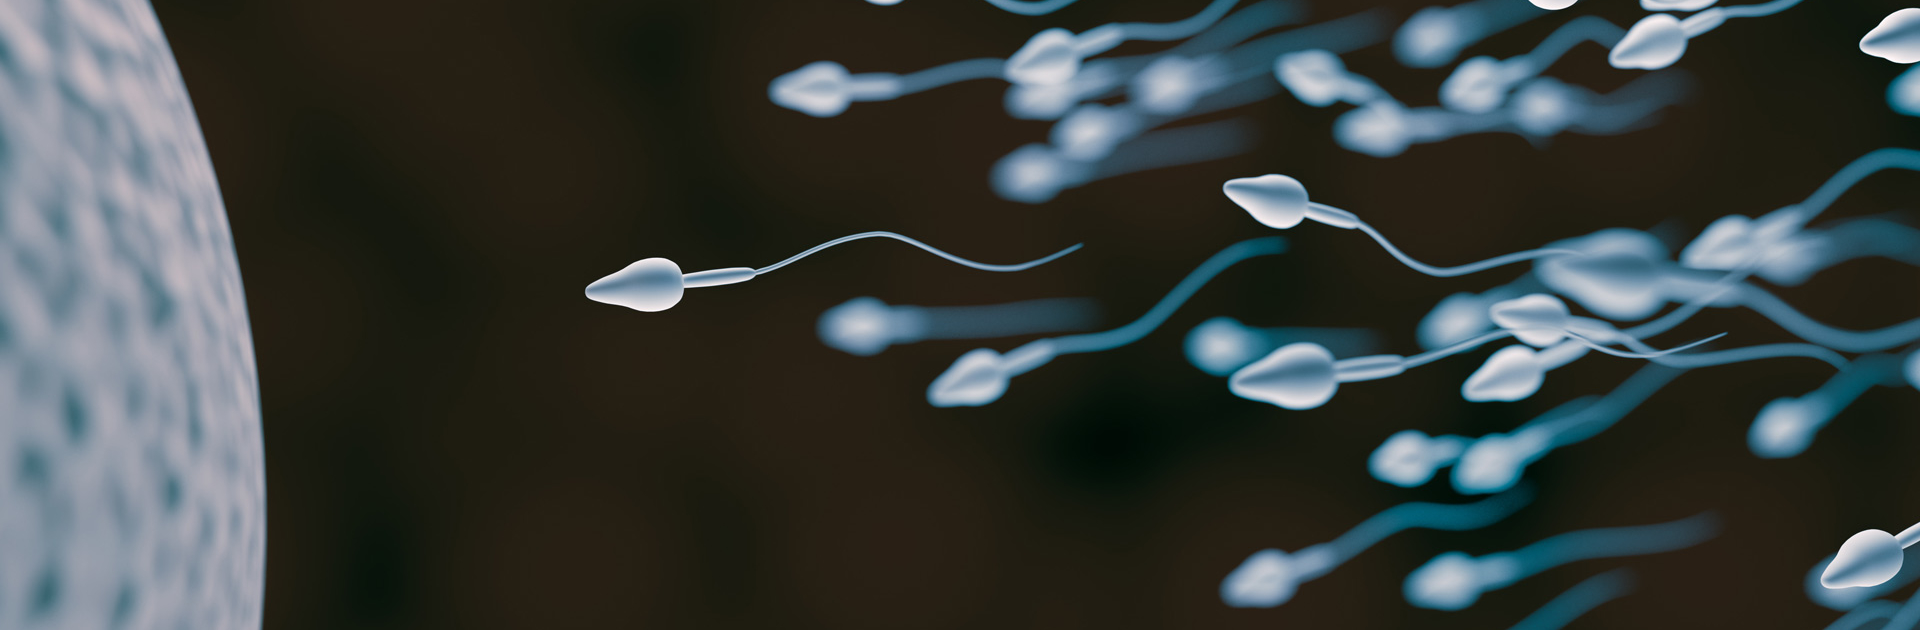 жизнь спермы в не организма фото 118